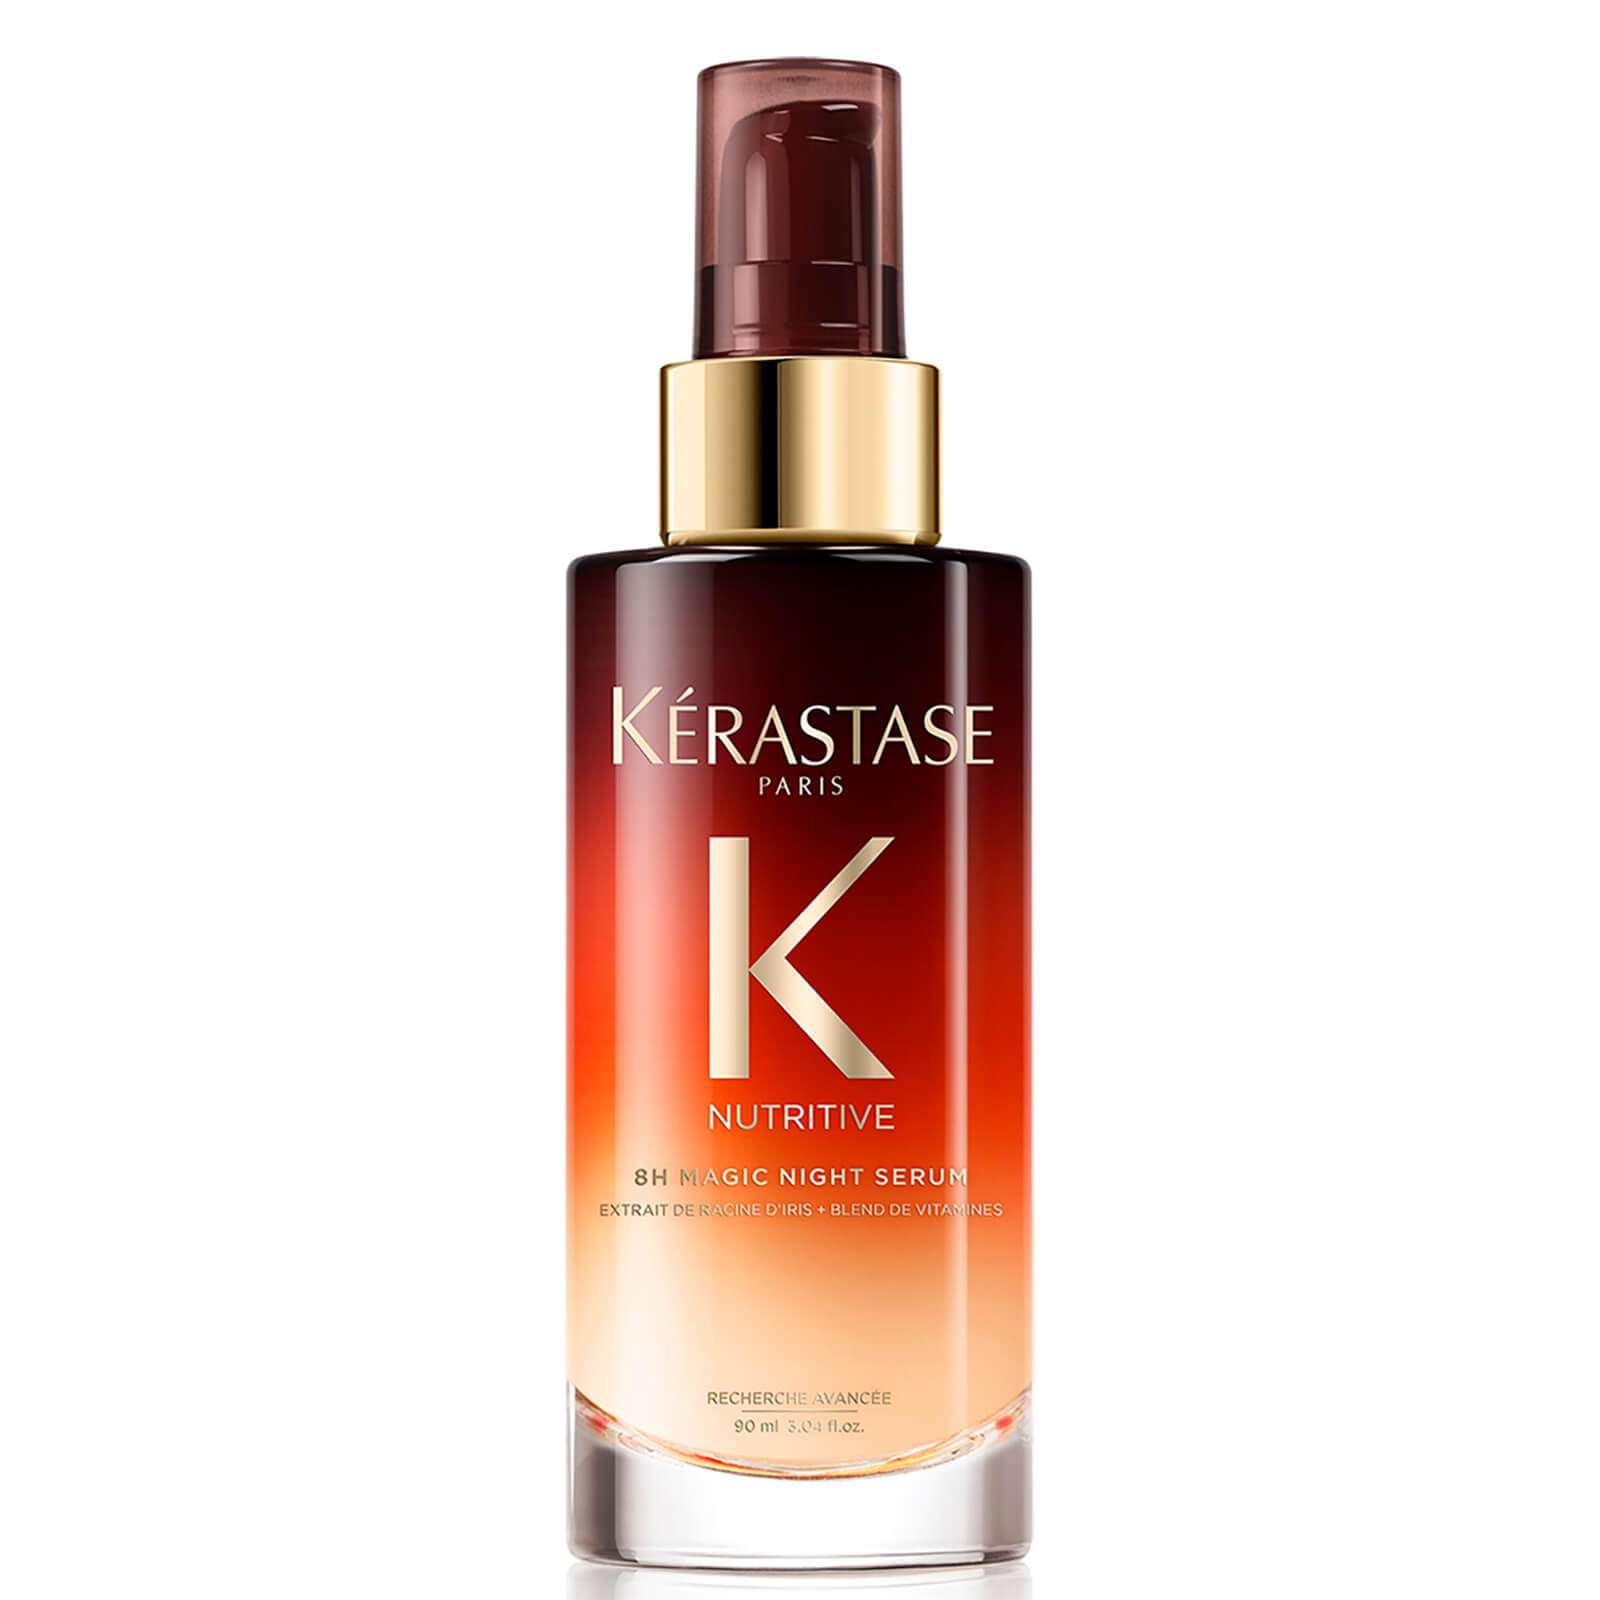 Питательная ночная сыворотка для сухих волос Kerastase Nutritive 8H Magic Night Serum